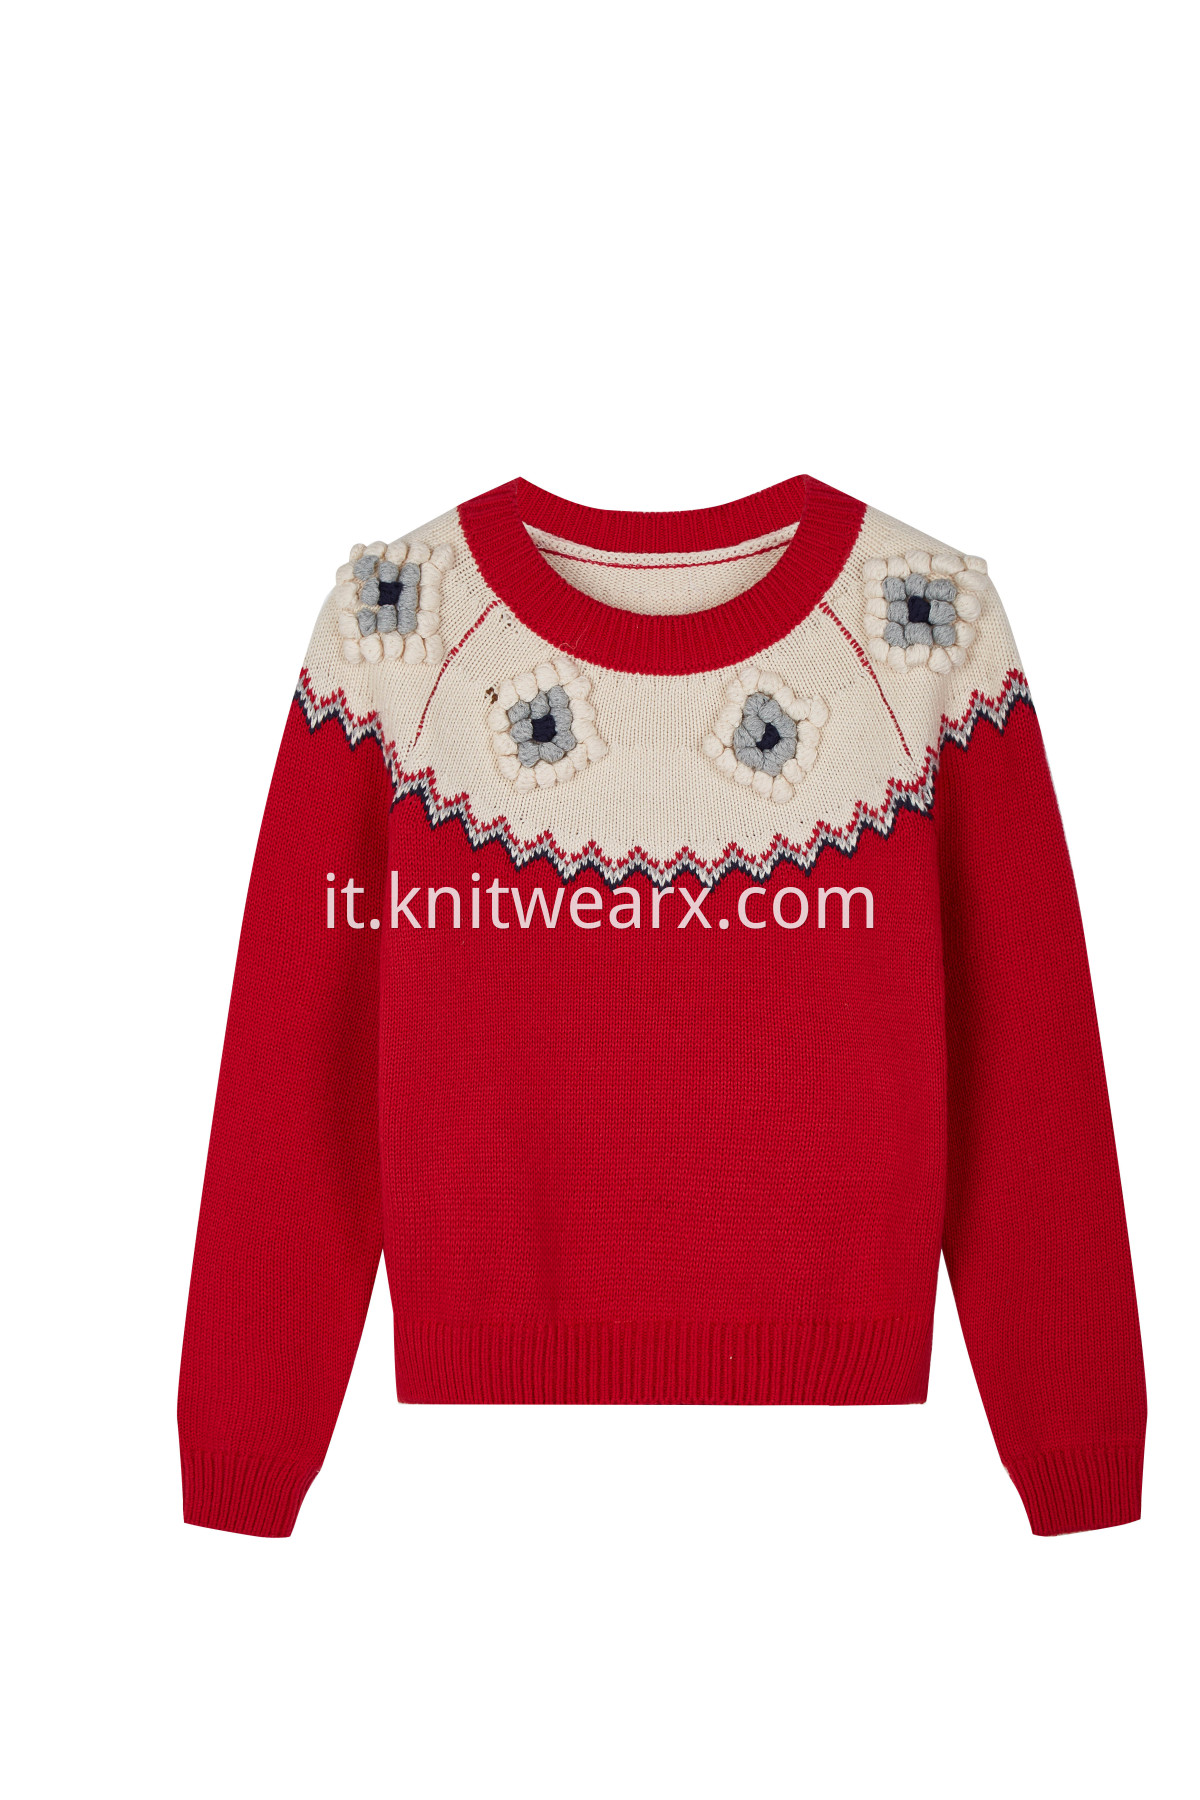 Girl's Elegant Crochet Ball Knitted Long Sleeve Pullover Sweater